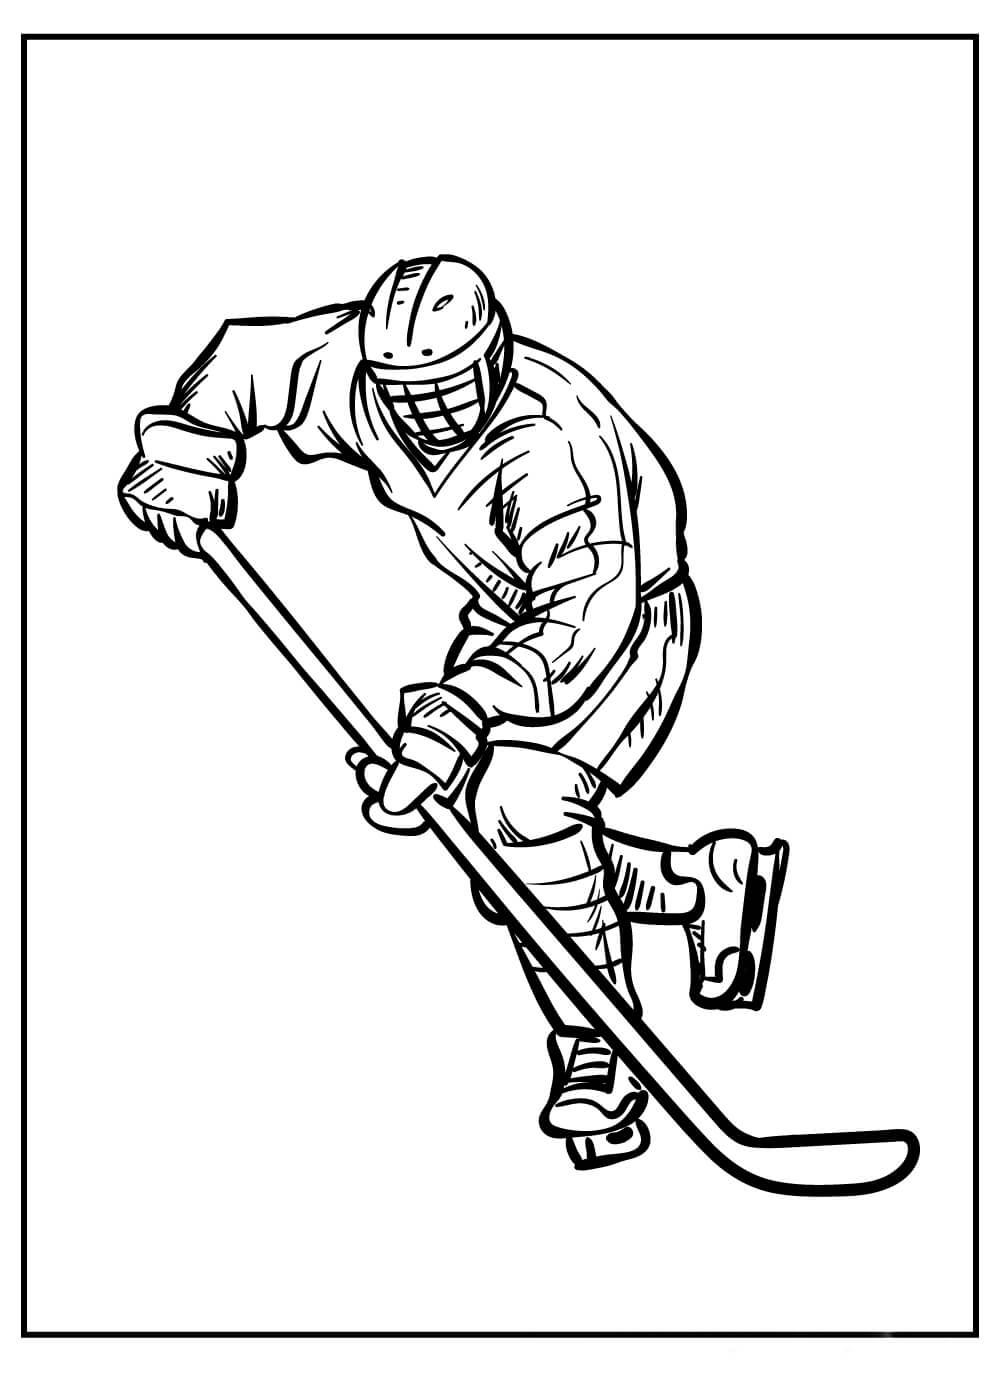 Dibujos de Hombre Jugando al Hockey para colorear